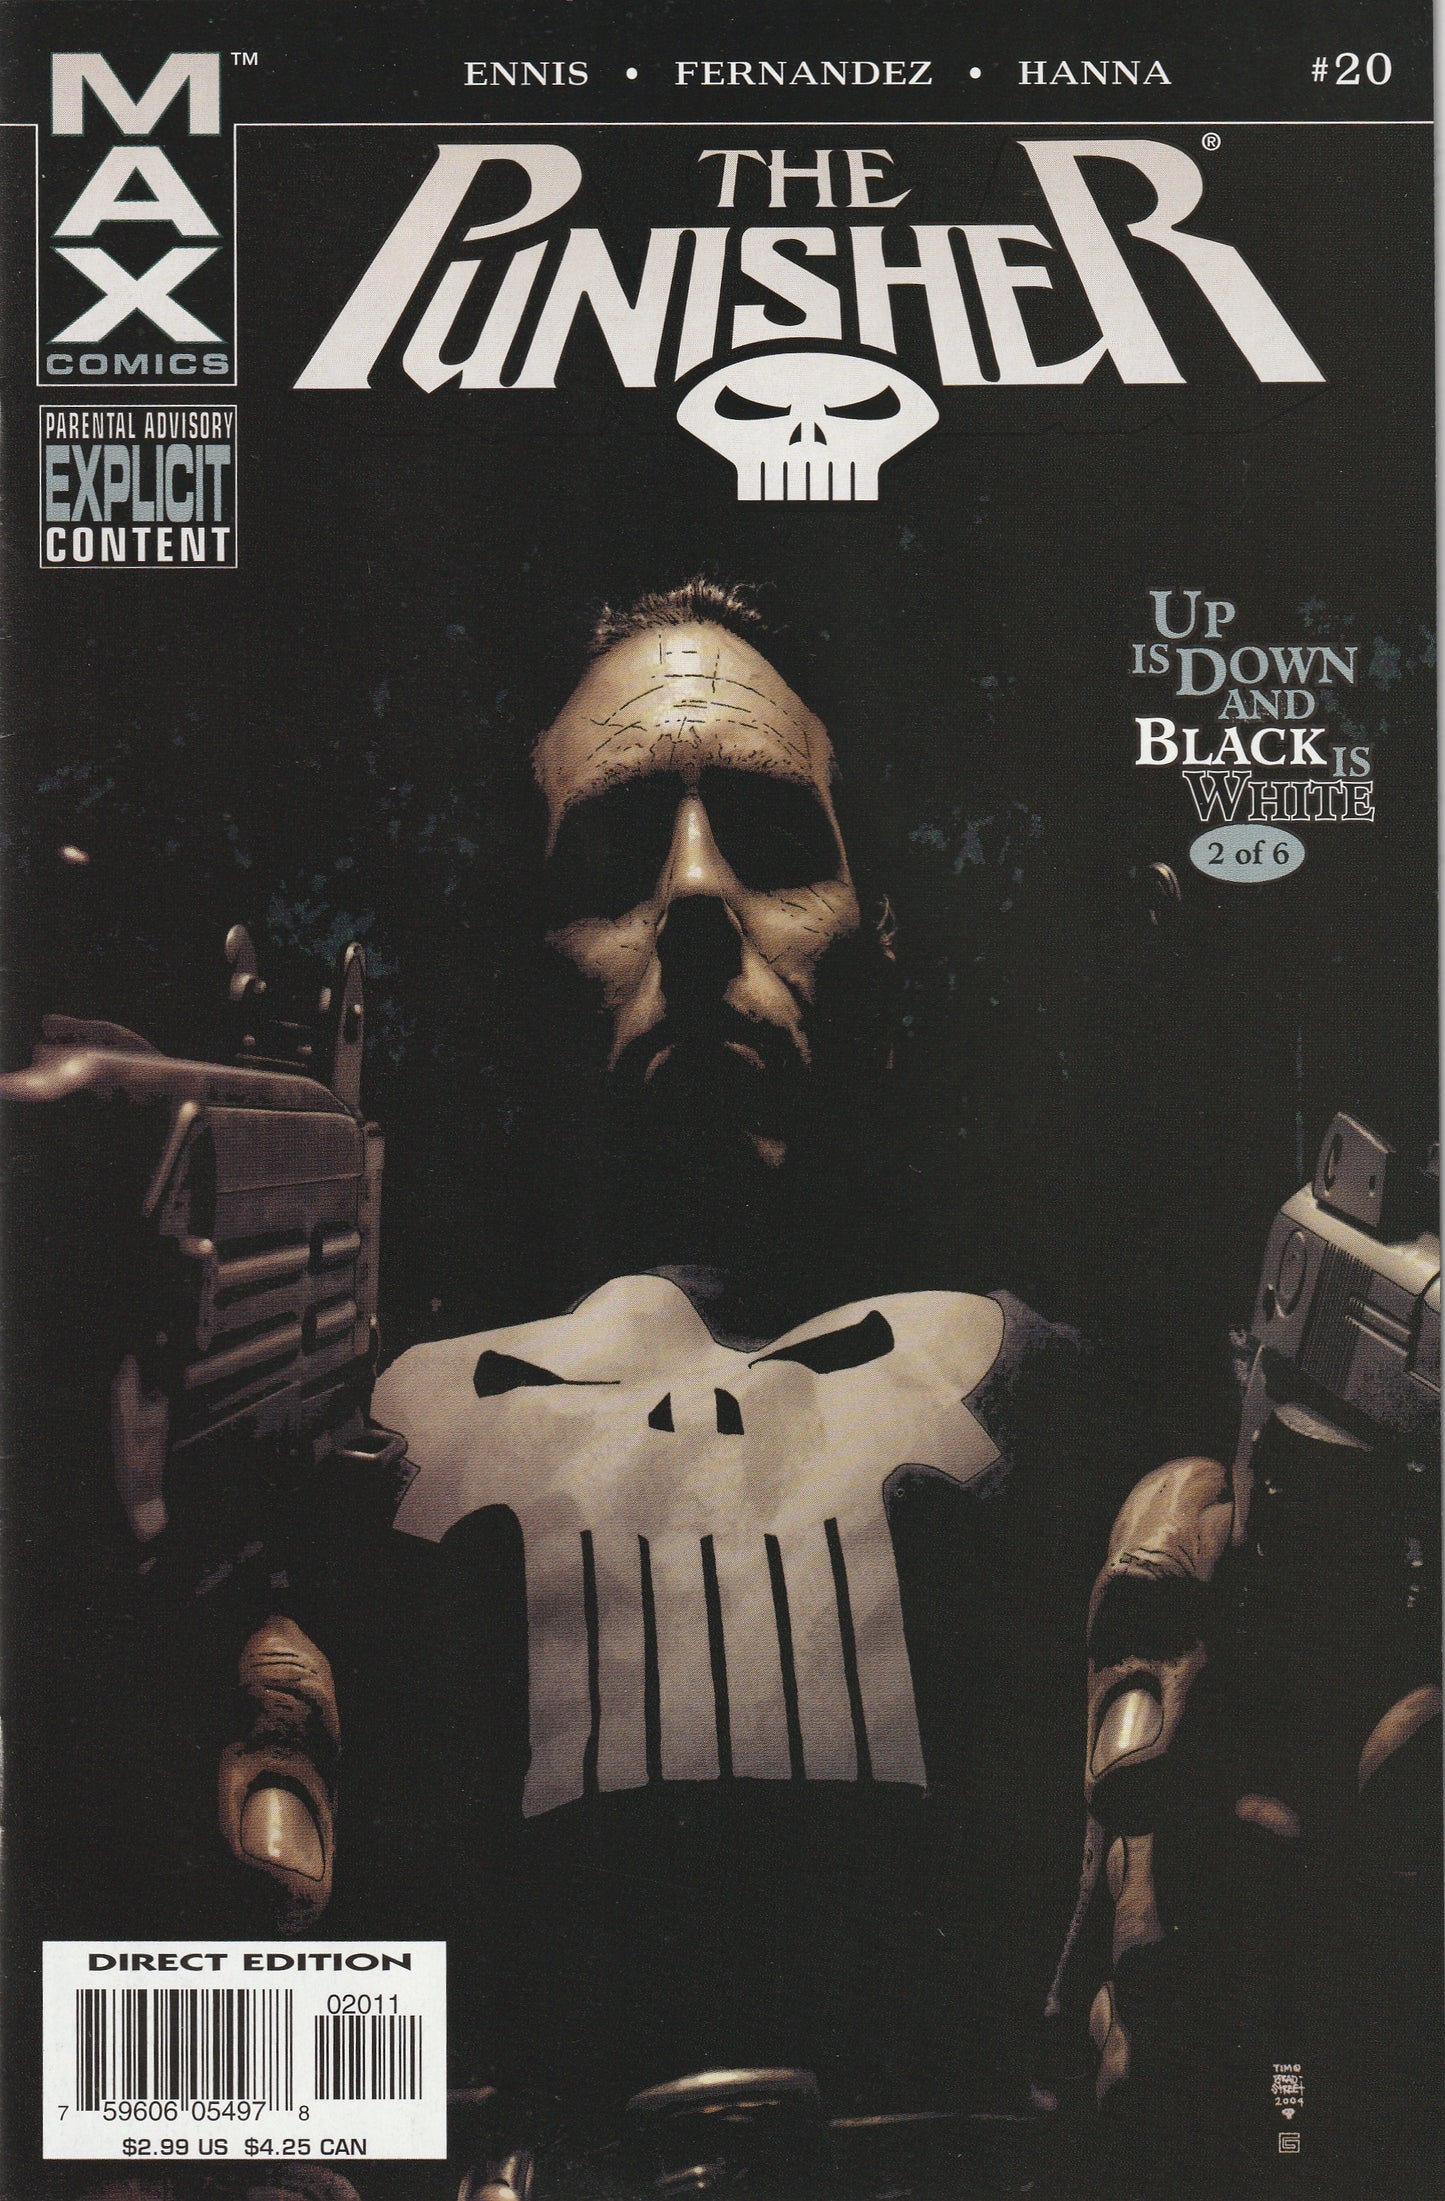 The Punisher #20 (MAX, 2005) - Garth Ennis